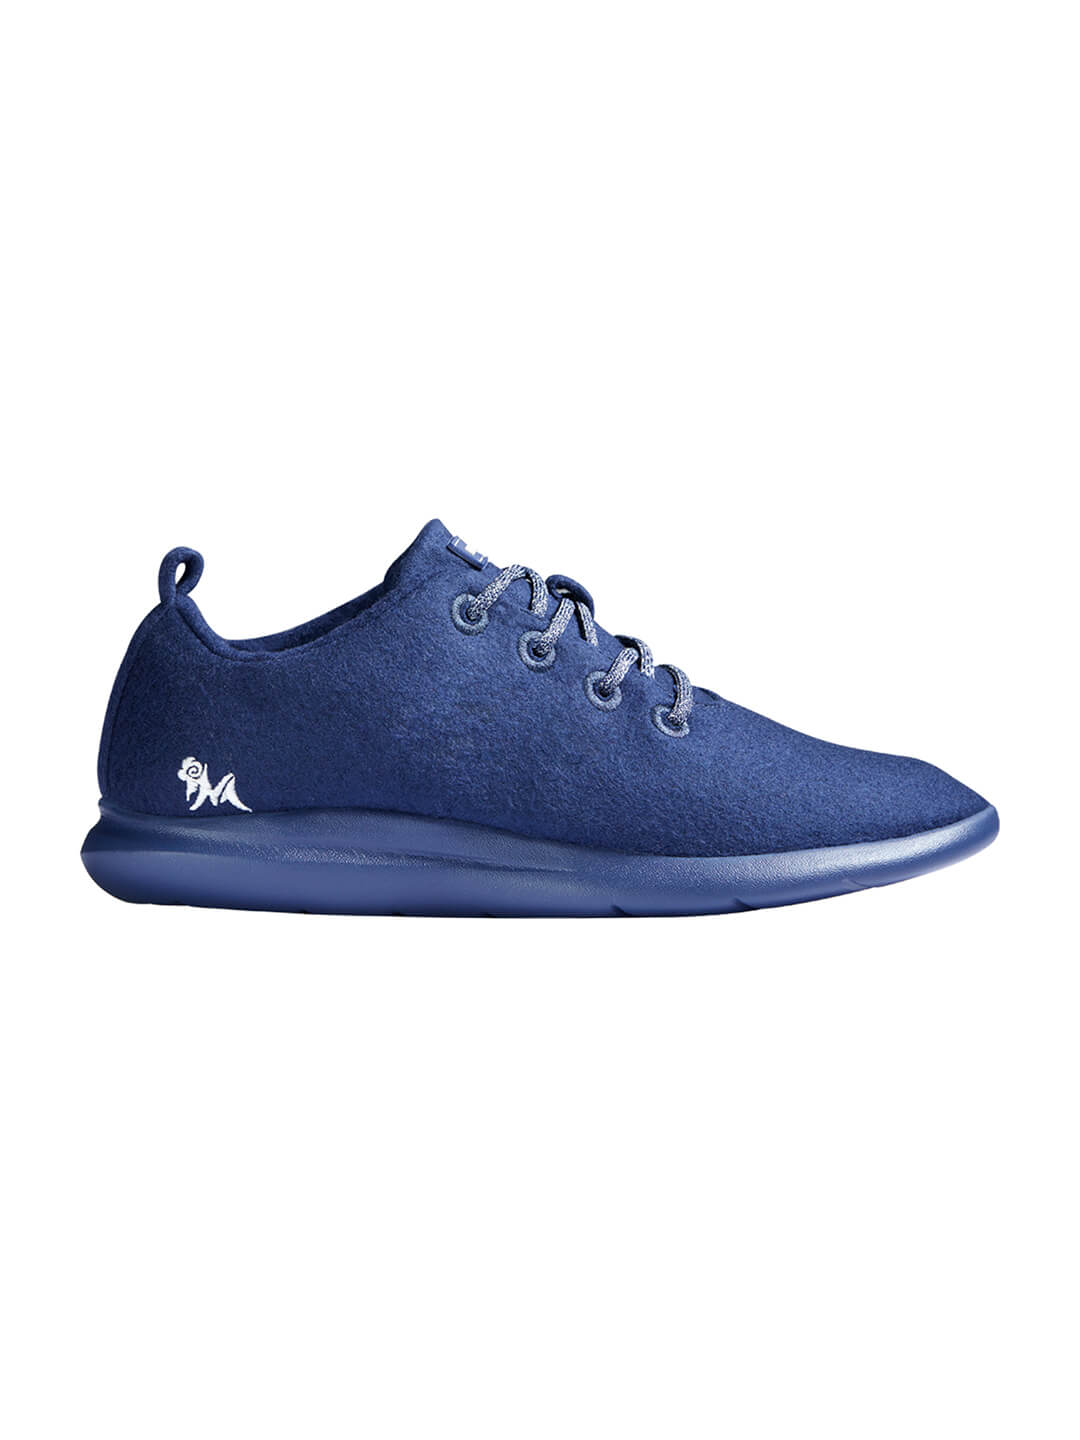  Footwear, Unisex Footwear, Navy Blue Sneakers